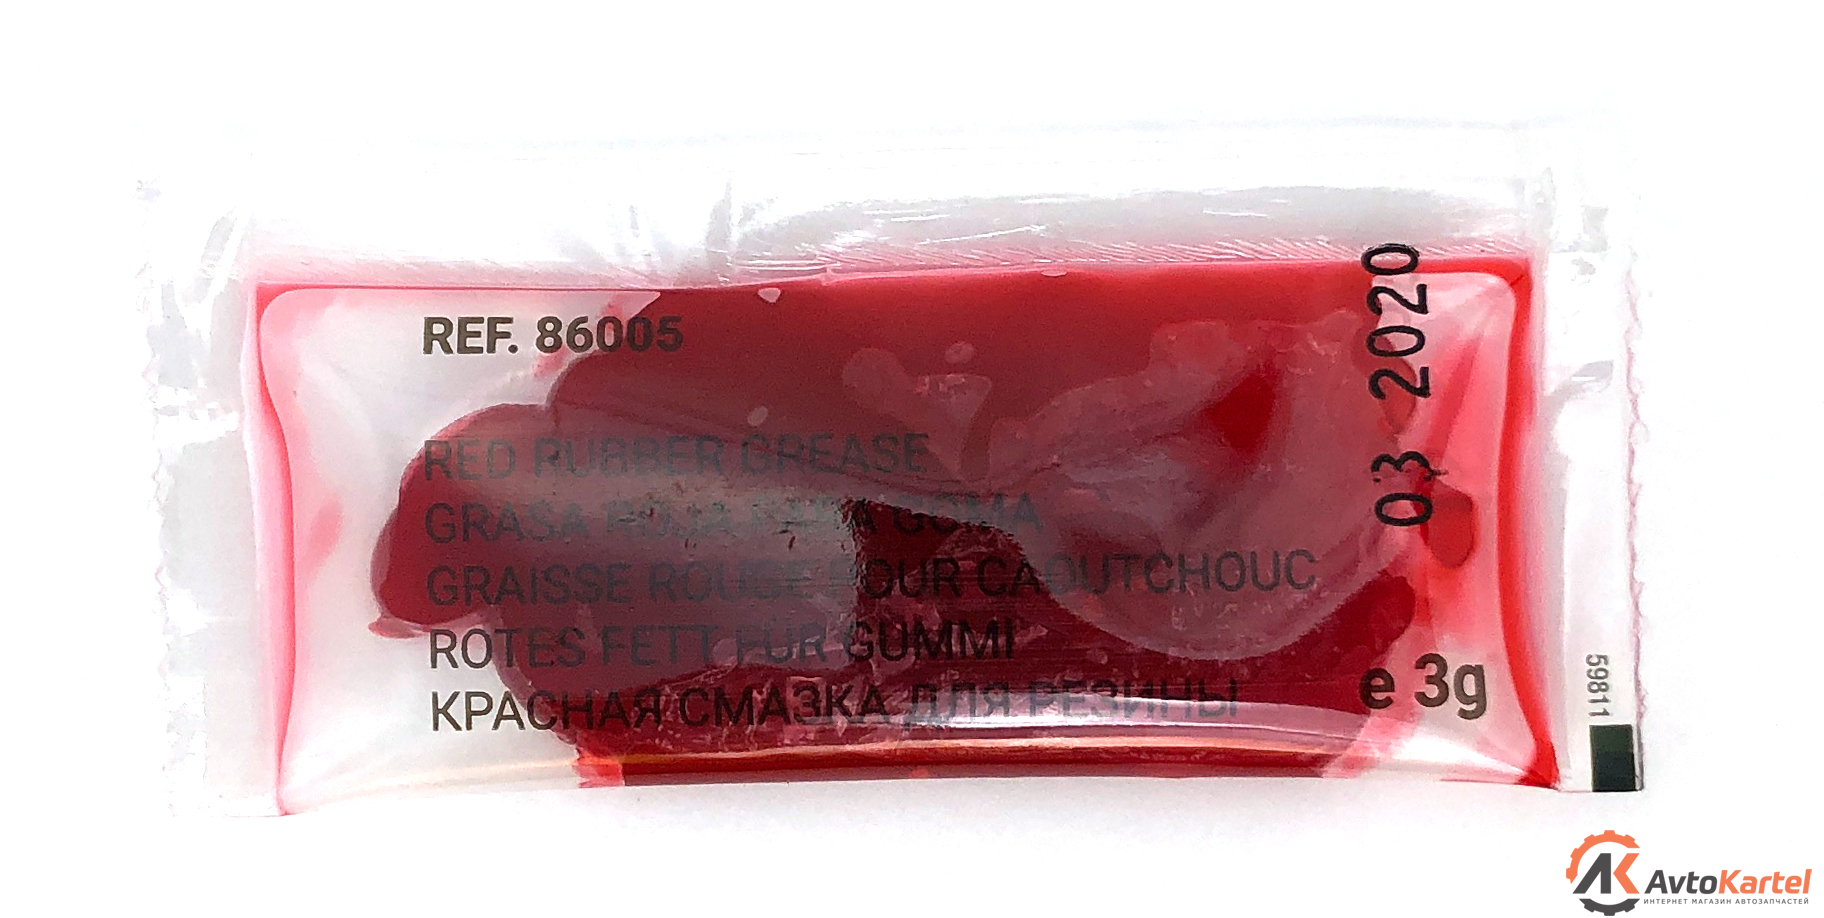 Смазка красная для резиновых уплотнений поршней суппортов 3гр